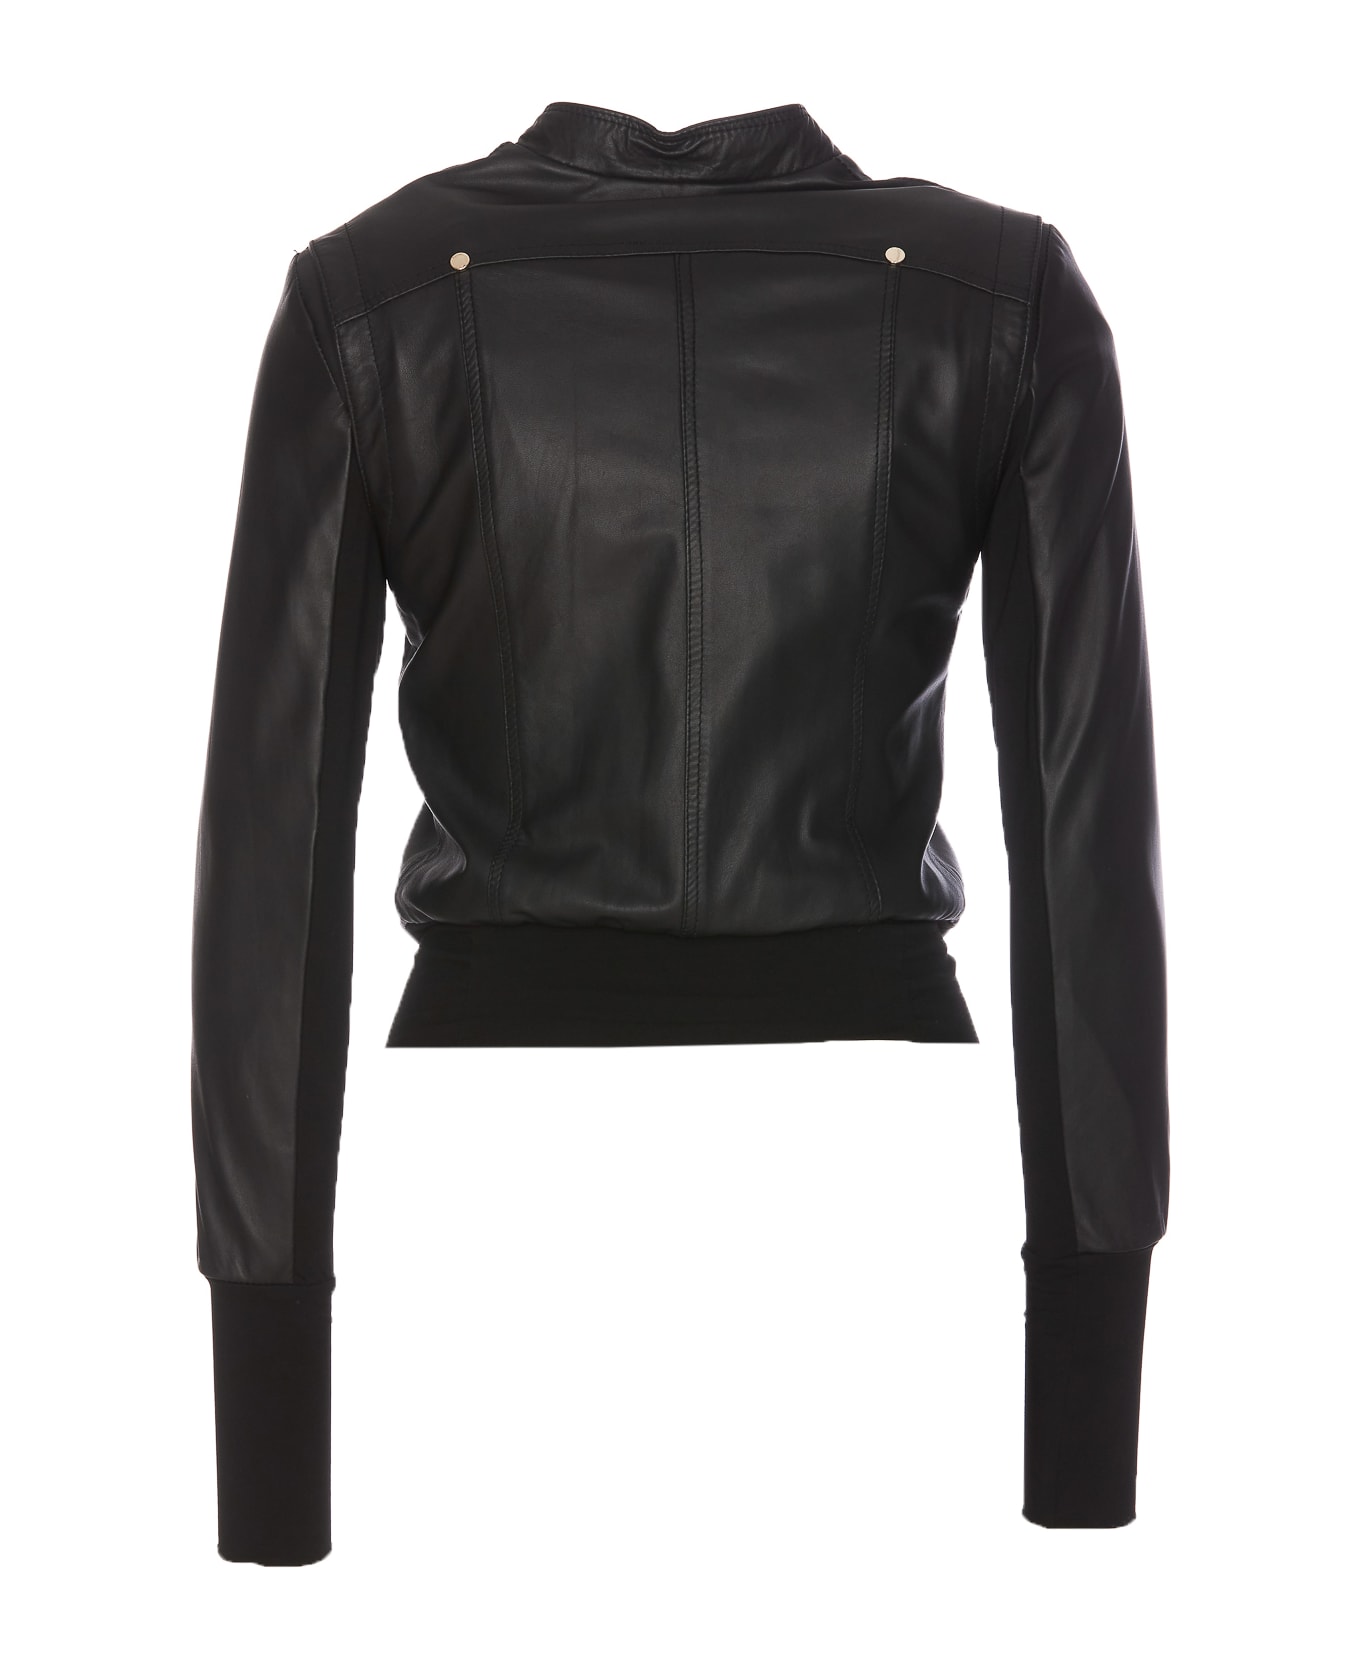 Patrizia Pepe Leather Jacket - Black